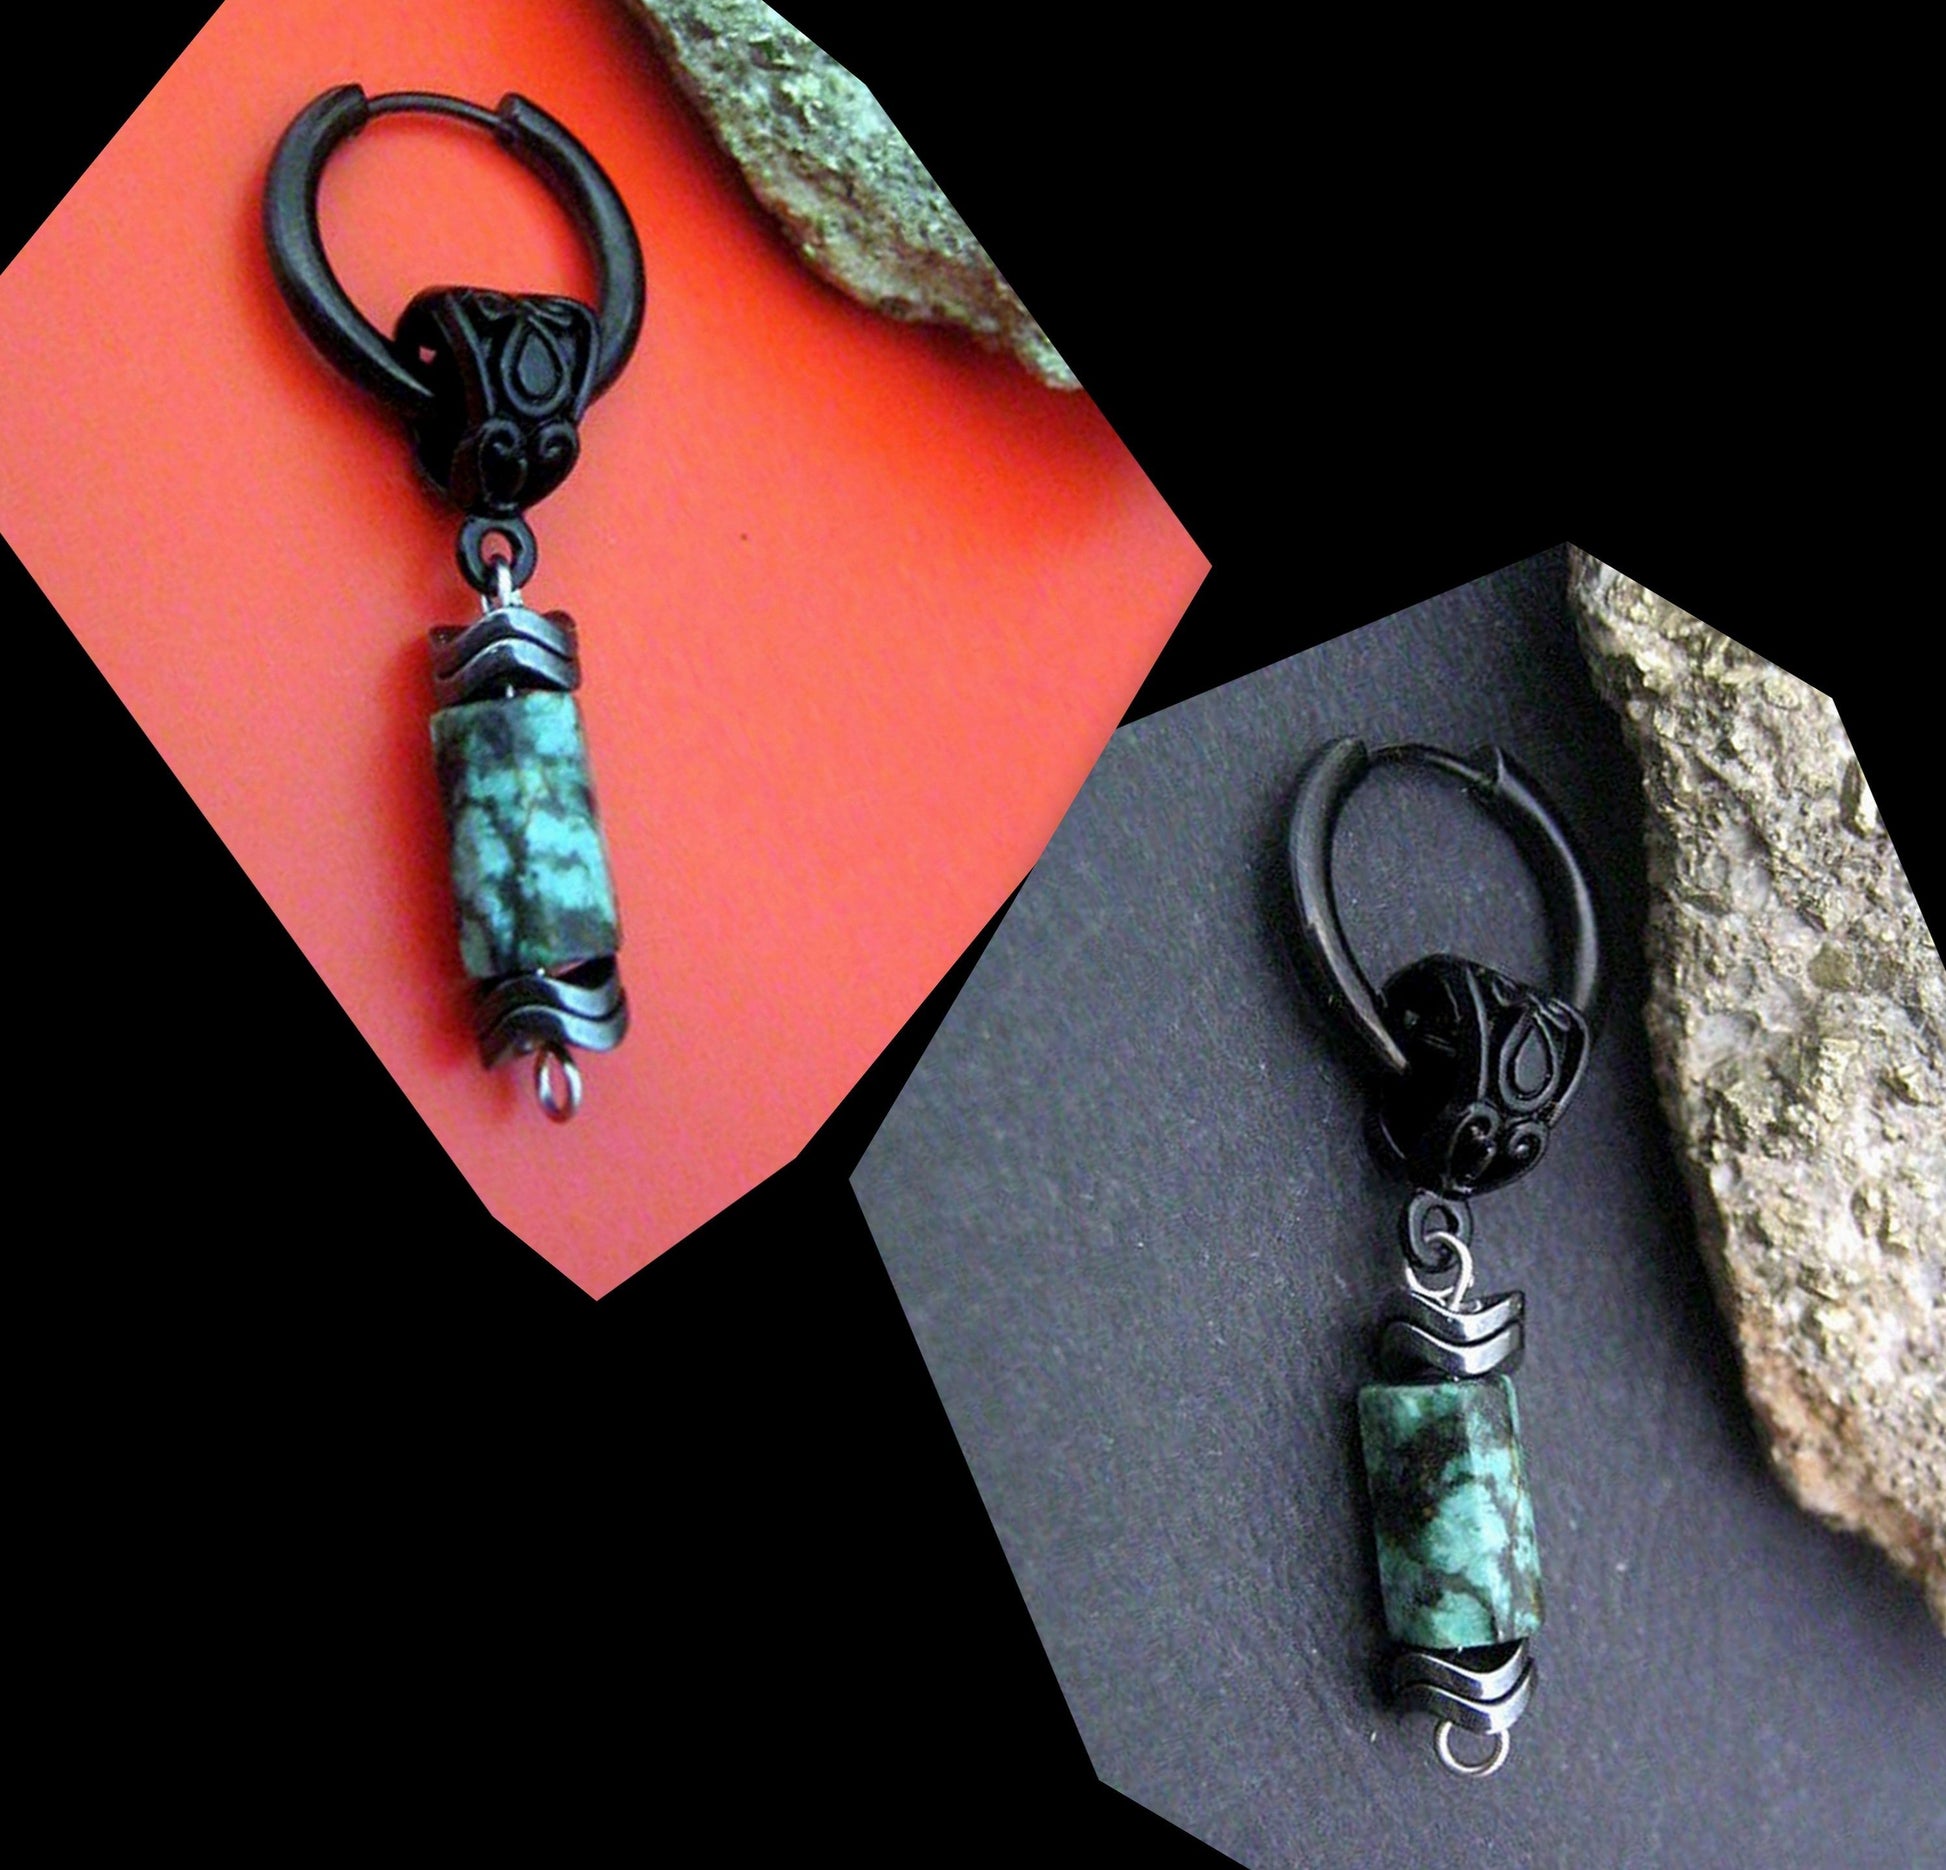 CAMELYS MAGIC 4 MEN - Men Earring African turquoise & Hematite stone Dangle Hoop/ clip on, Handmade earring men gift